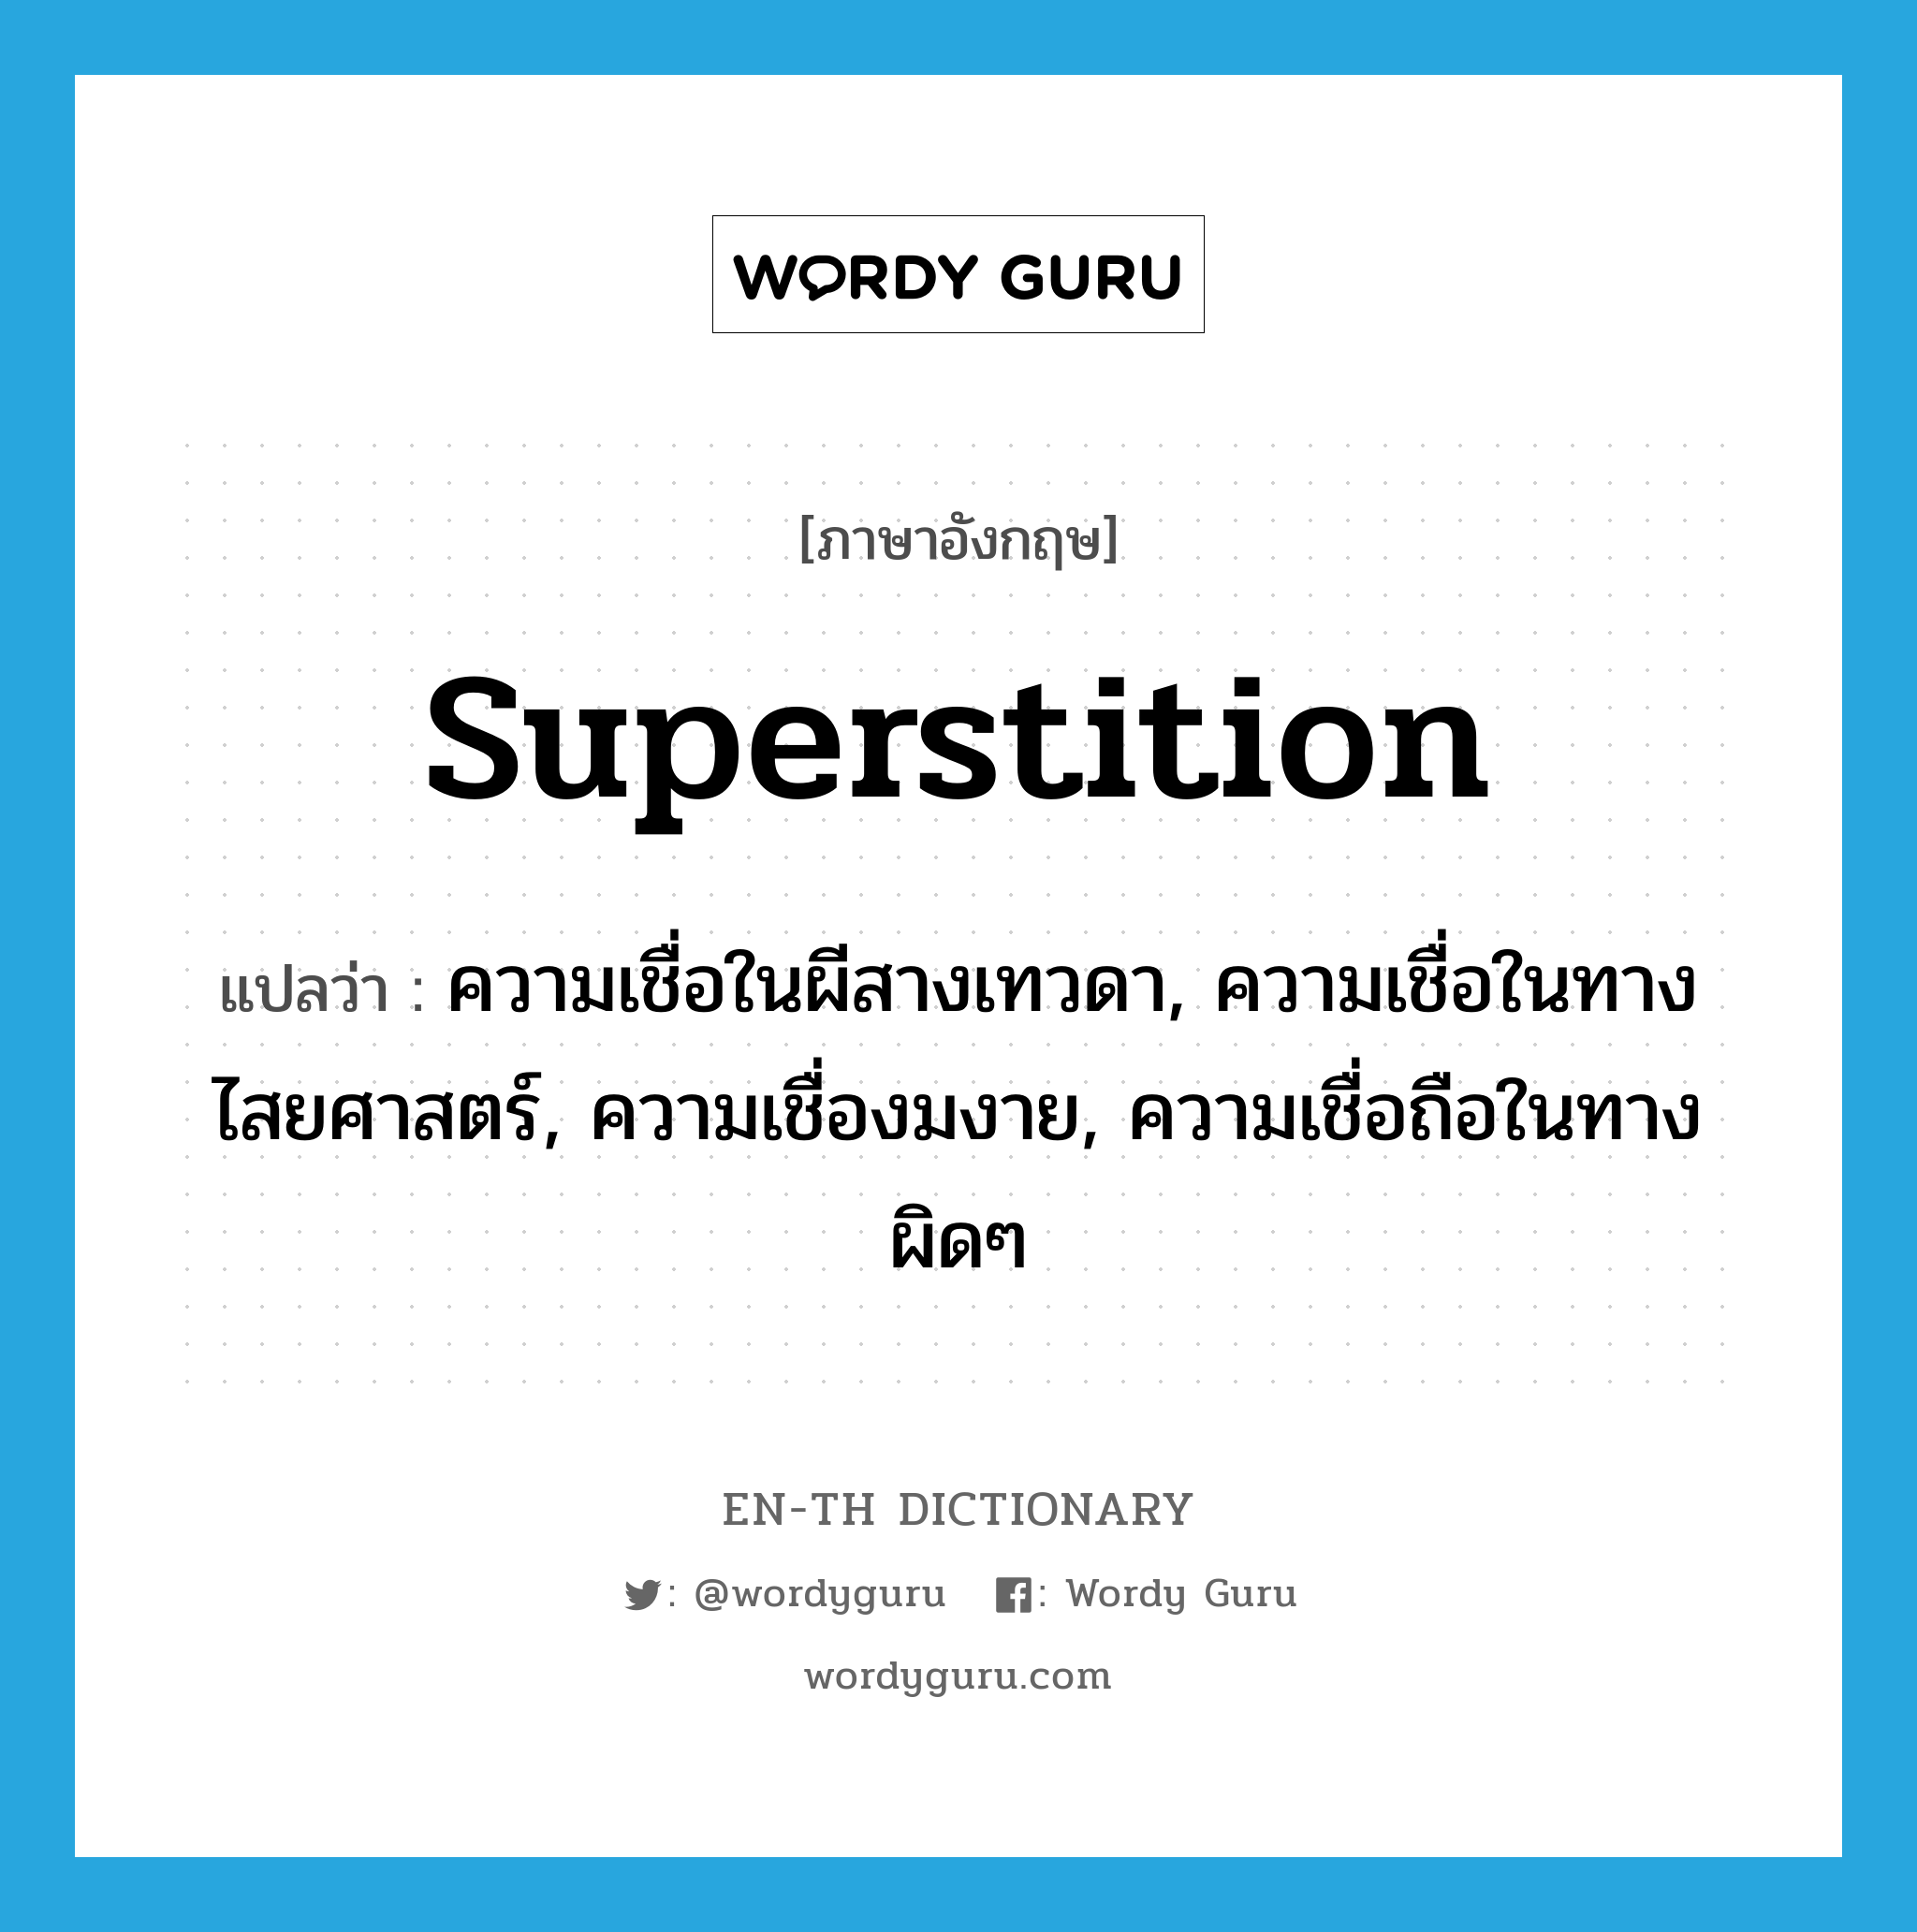 superstition แปลว่า?, คำศัพท์ภาษาอังกฤษ superstition แปลว่า ความเชื่อในผีสางเทวดา, ความเชื่อในทางไสยศาสตร์, ความเชื่องมงาย, ความเชื่อถือในทางผิดๆ ประเภท N หมวด N